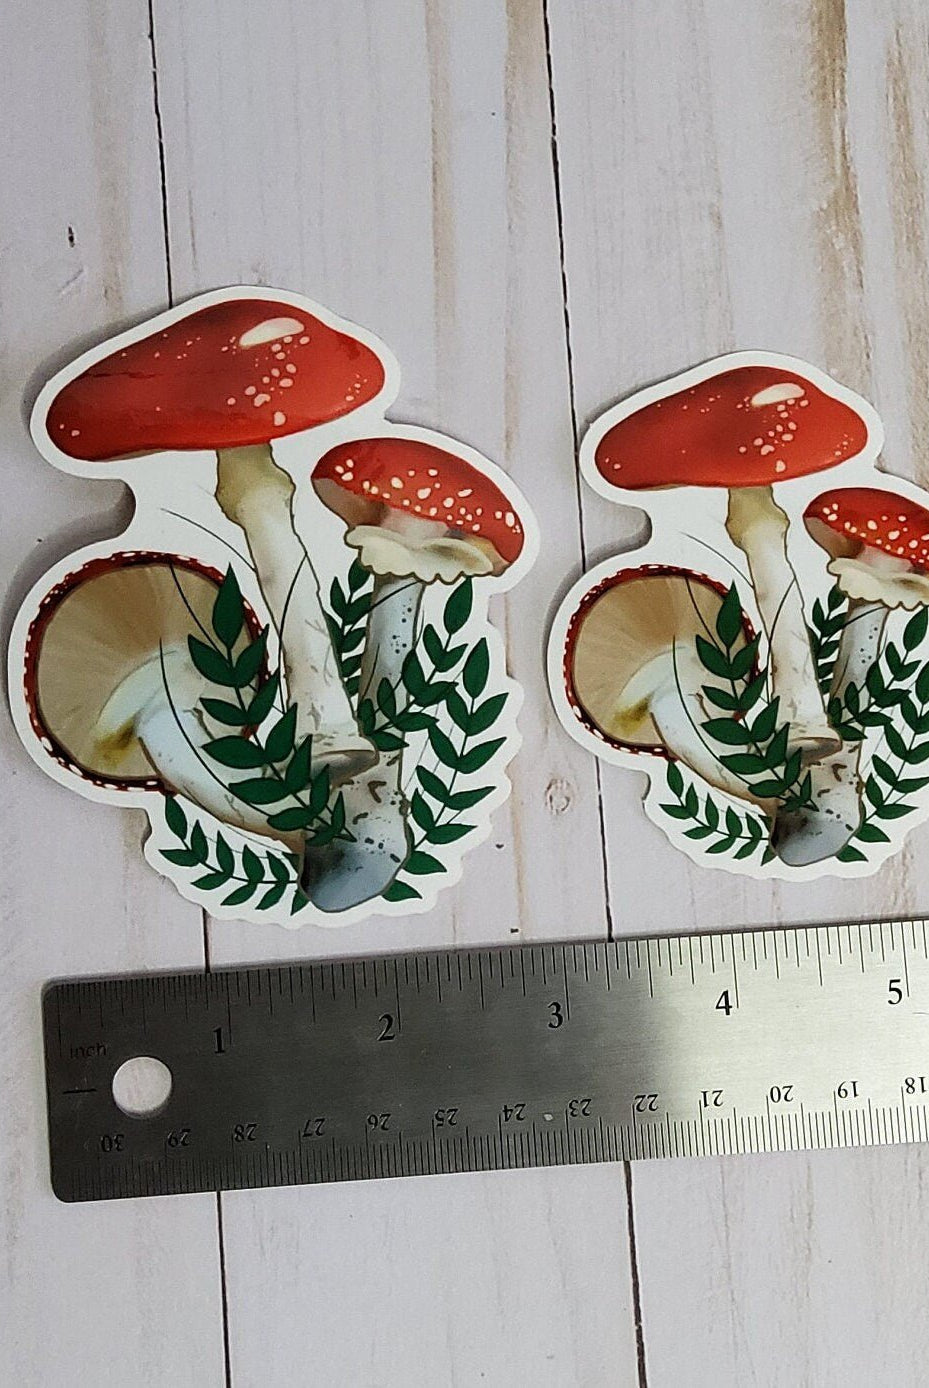 GLOSSY STICKER: Red Mushroom Forest Floor Aesthetic Sticker , Red Mushroom Sticker , Red Forest Mushroom Sticker , Mushroom Stickers